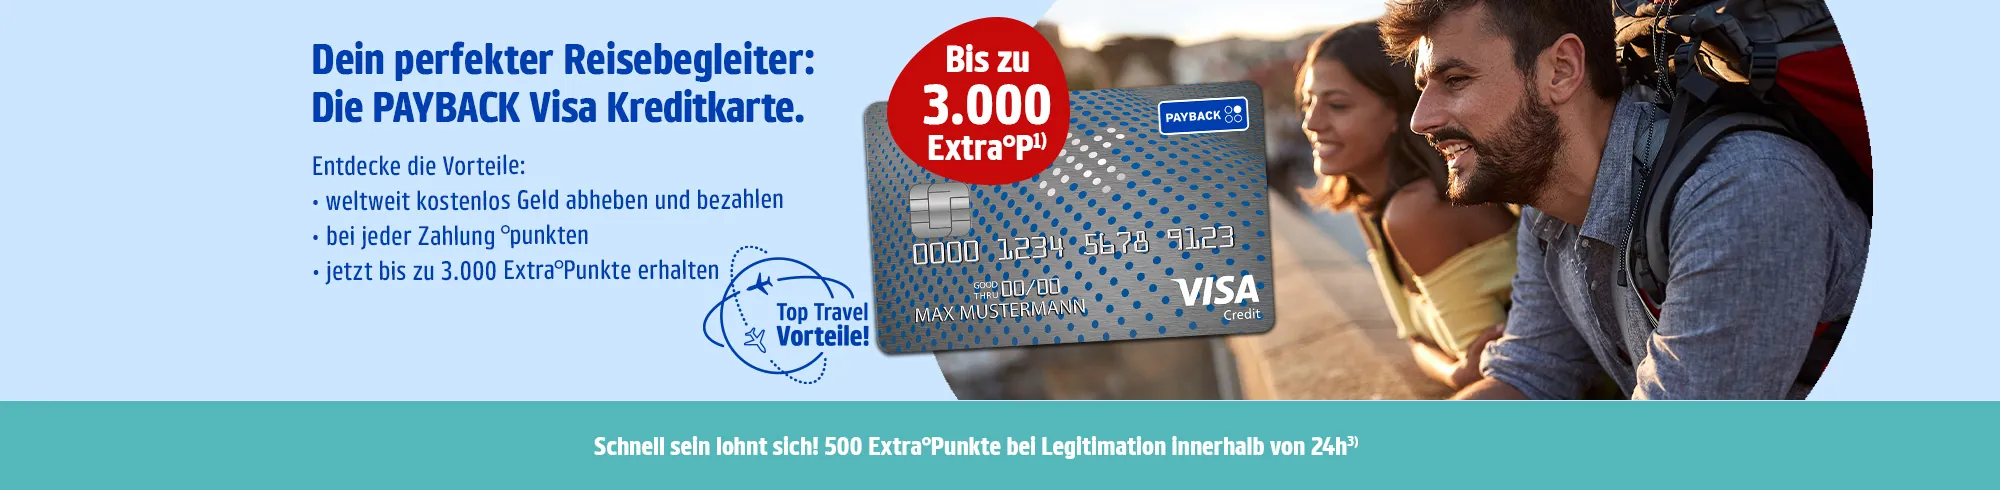 Mit der kostenlosen PAYBACK Visa Flex Kreditkarte flexibel zurückzahlen und überall punkten